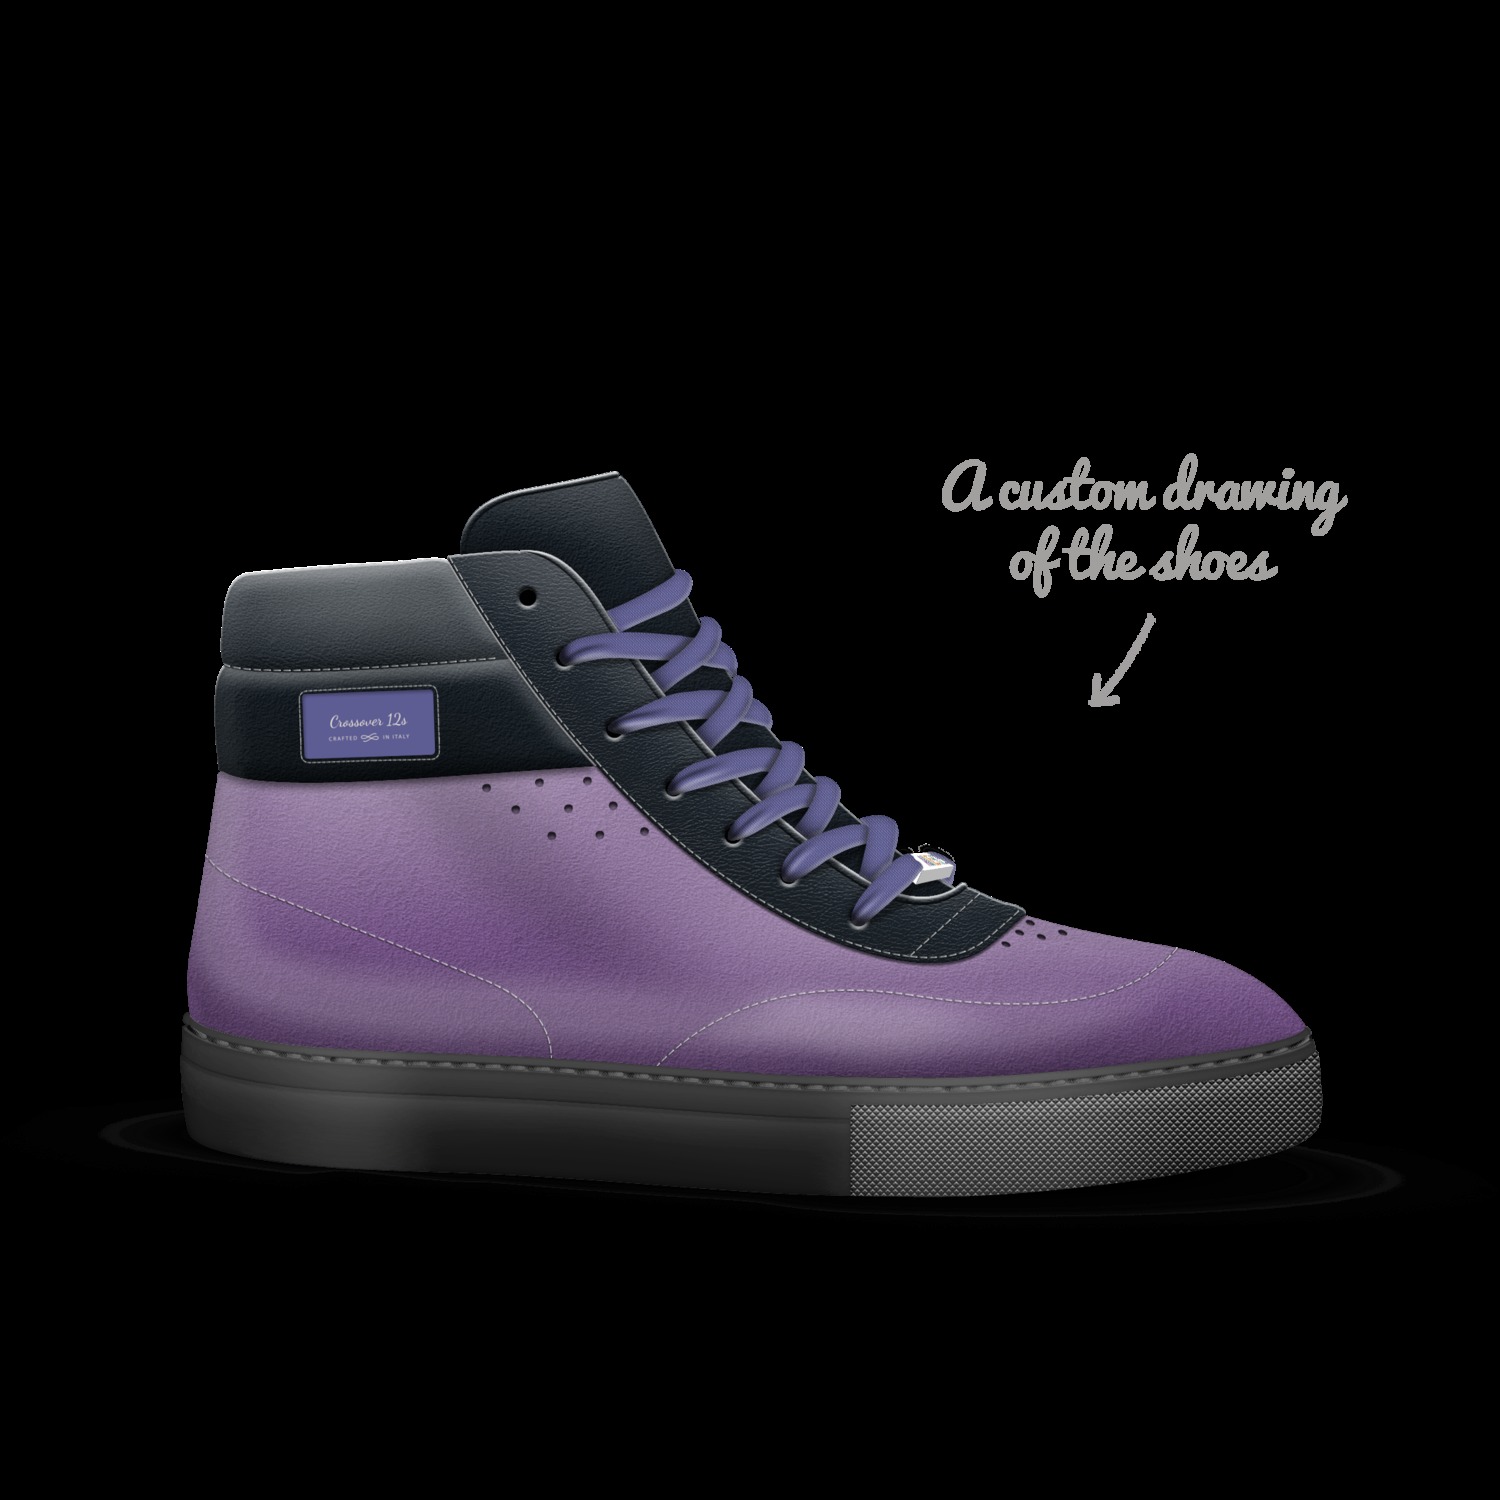 Crossover 12s | A Custom Shoe concept 